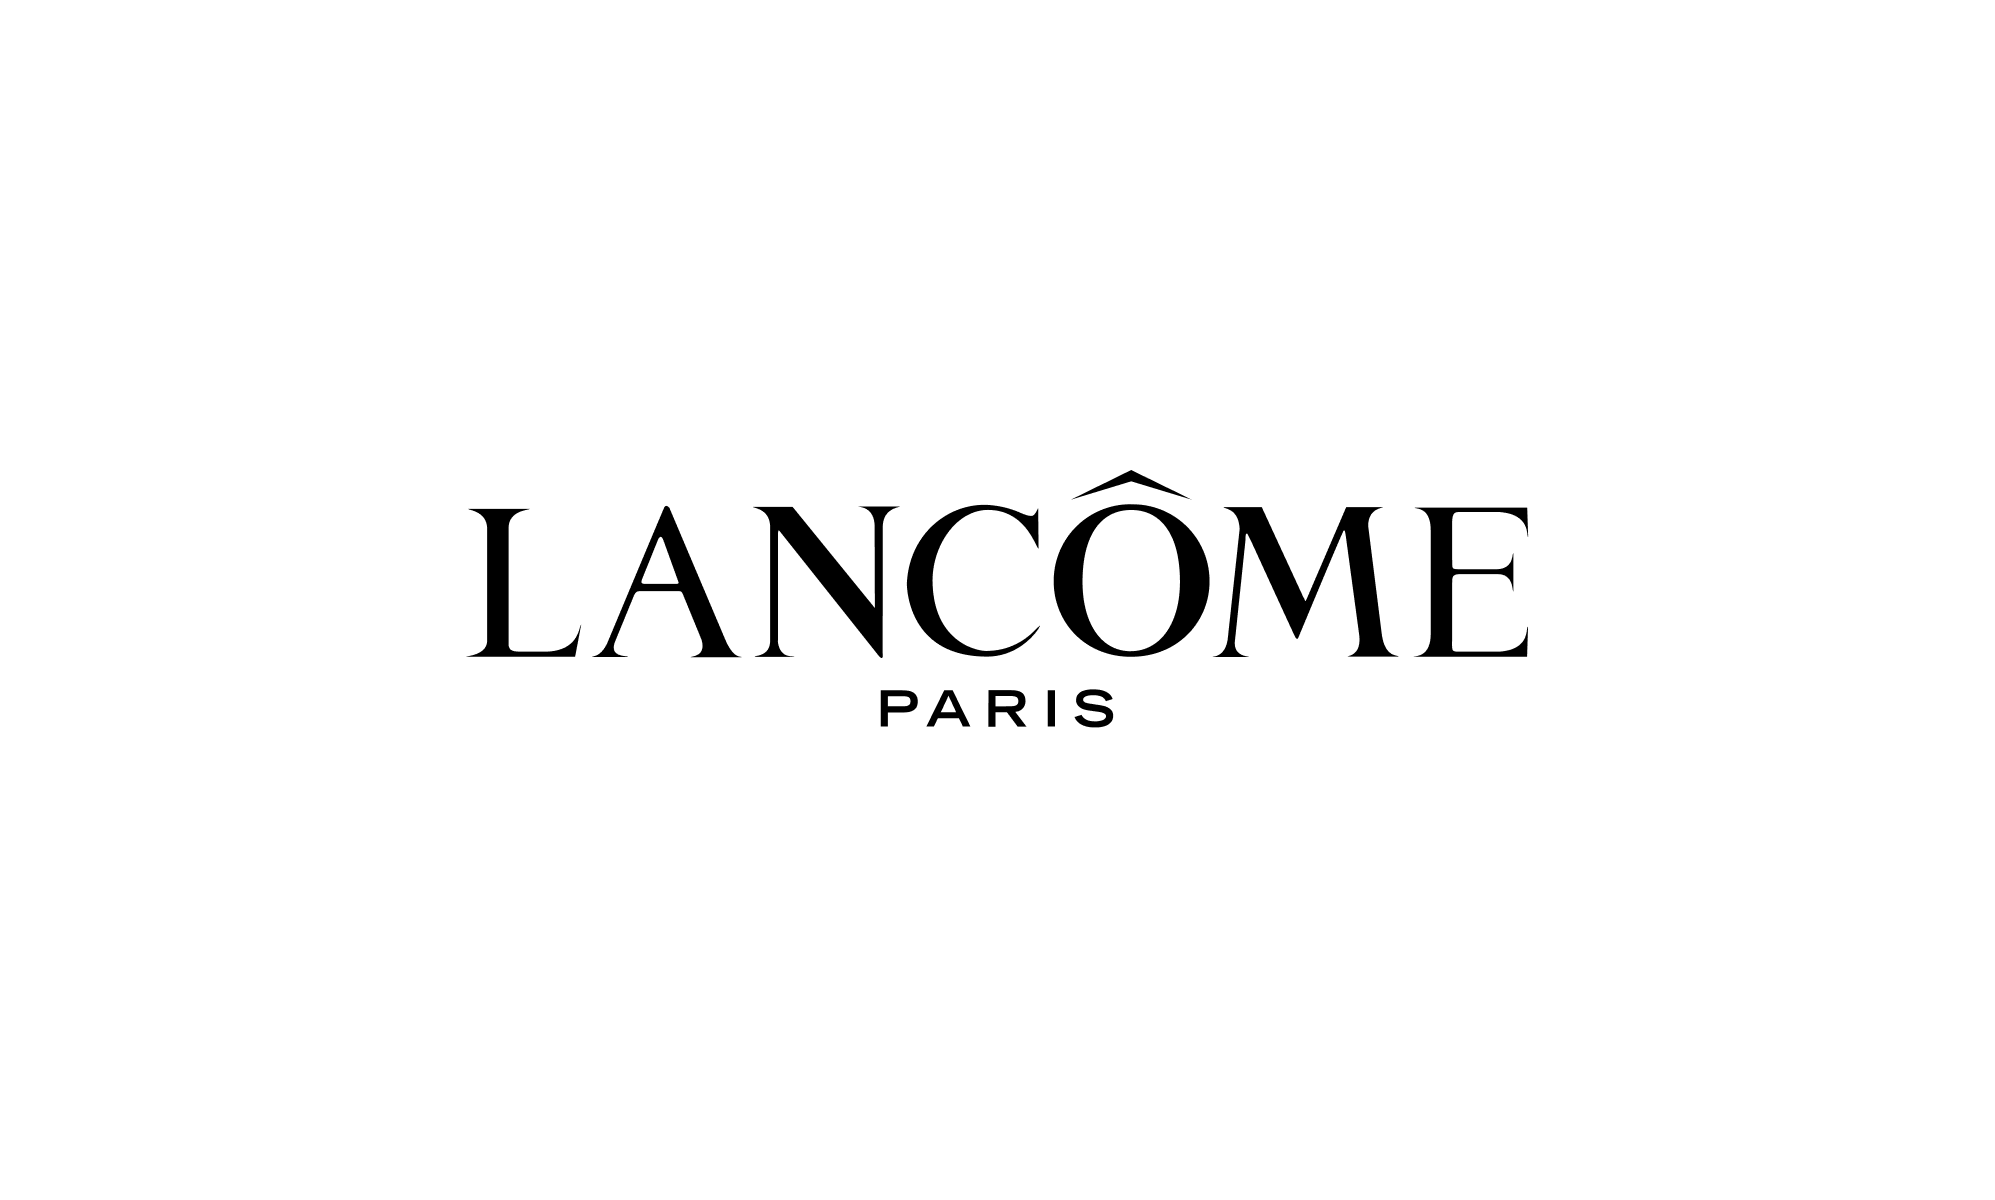 A black Lancôme logo on a white background